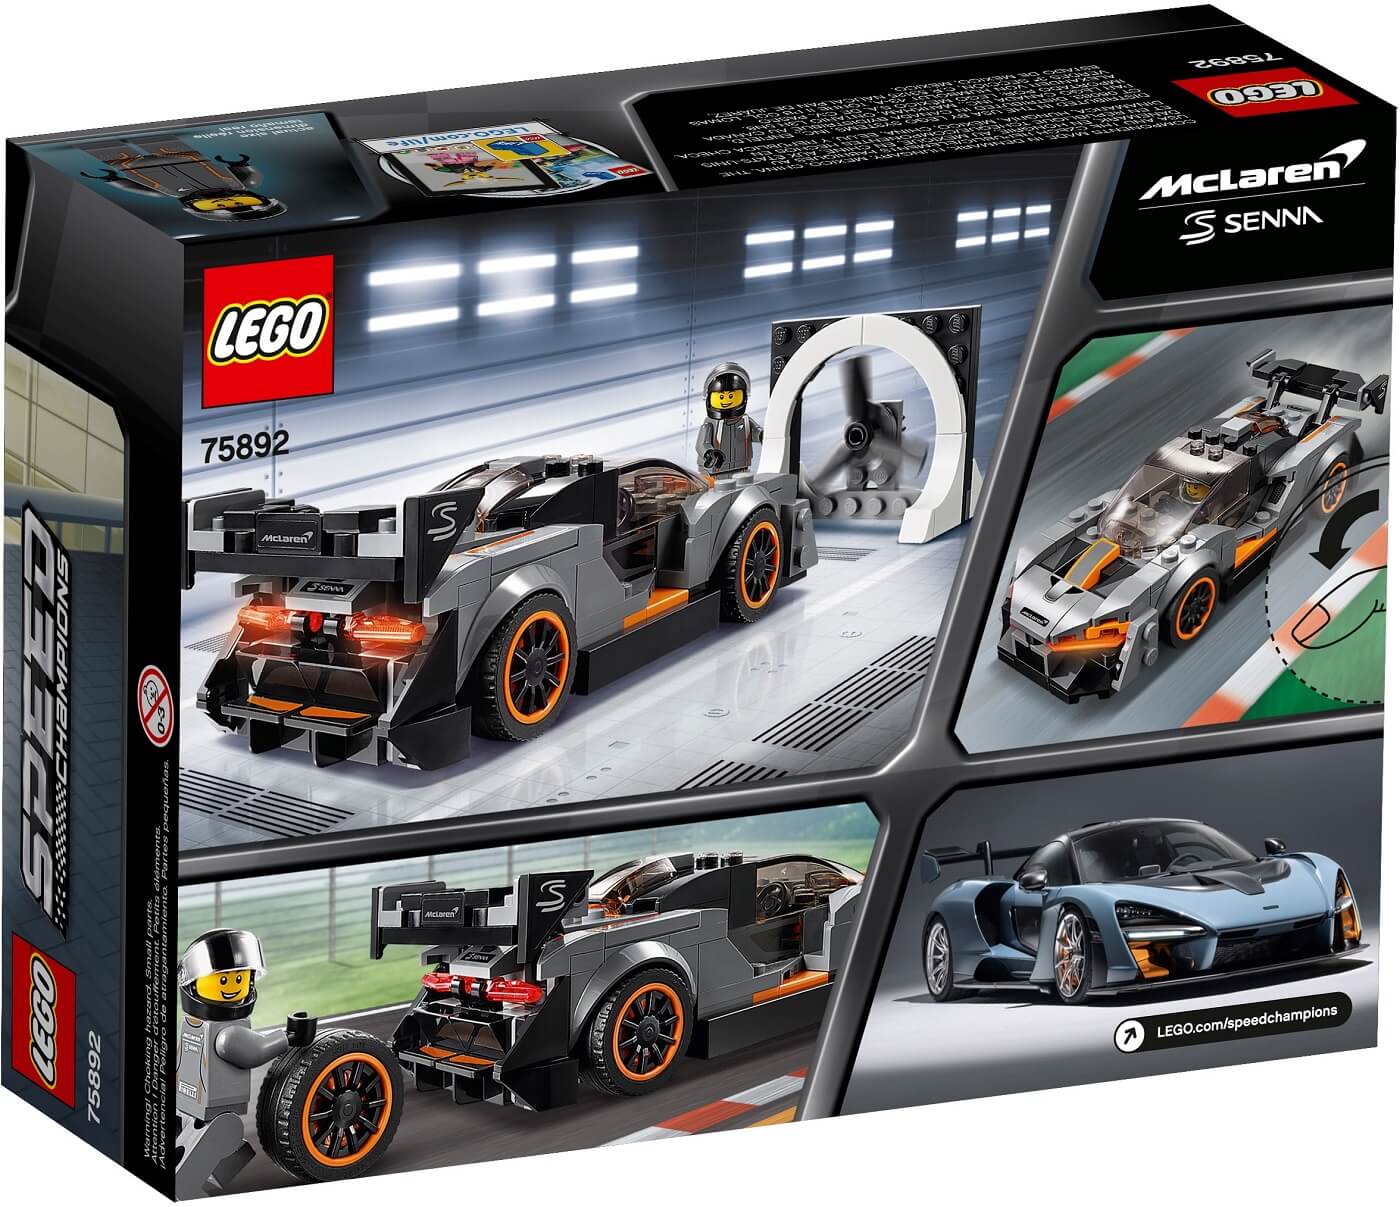 McLaren Senna ( Lego 75892 ) imagen e